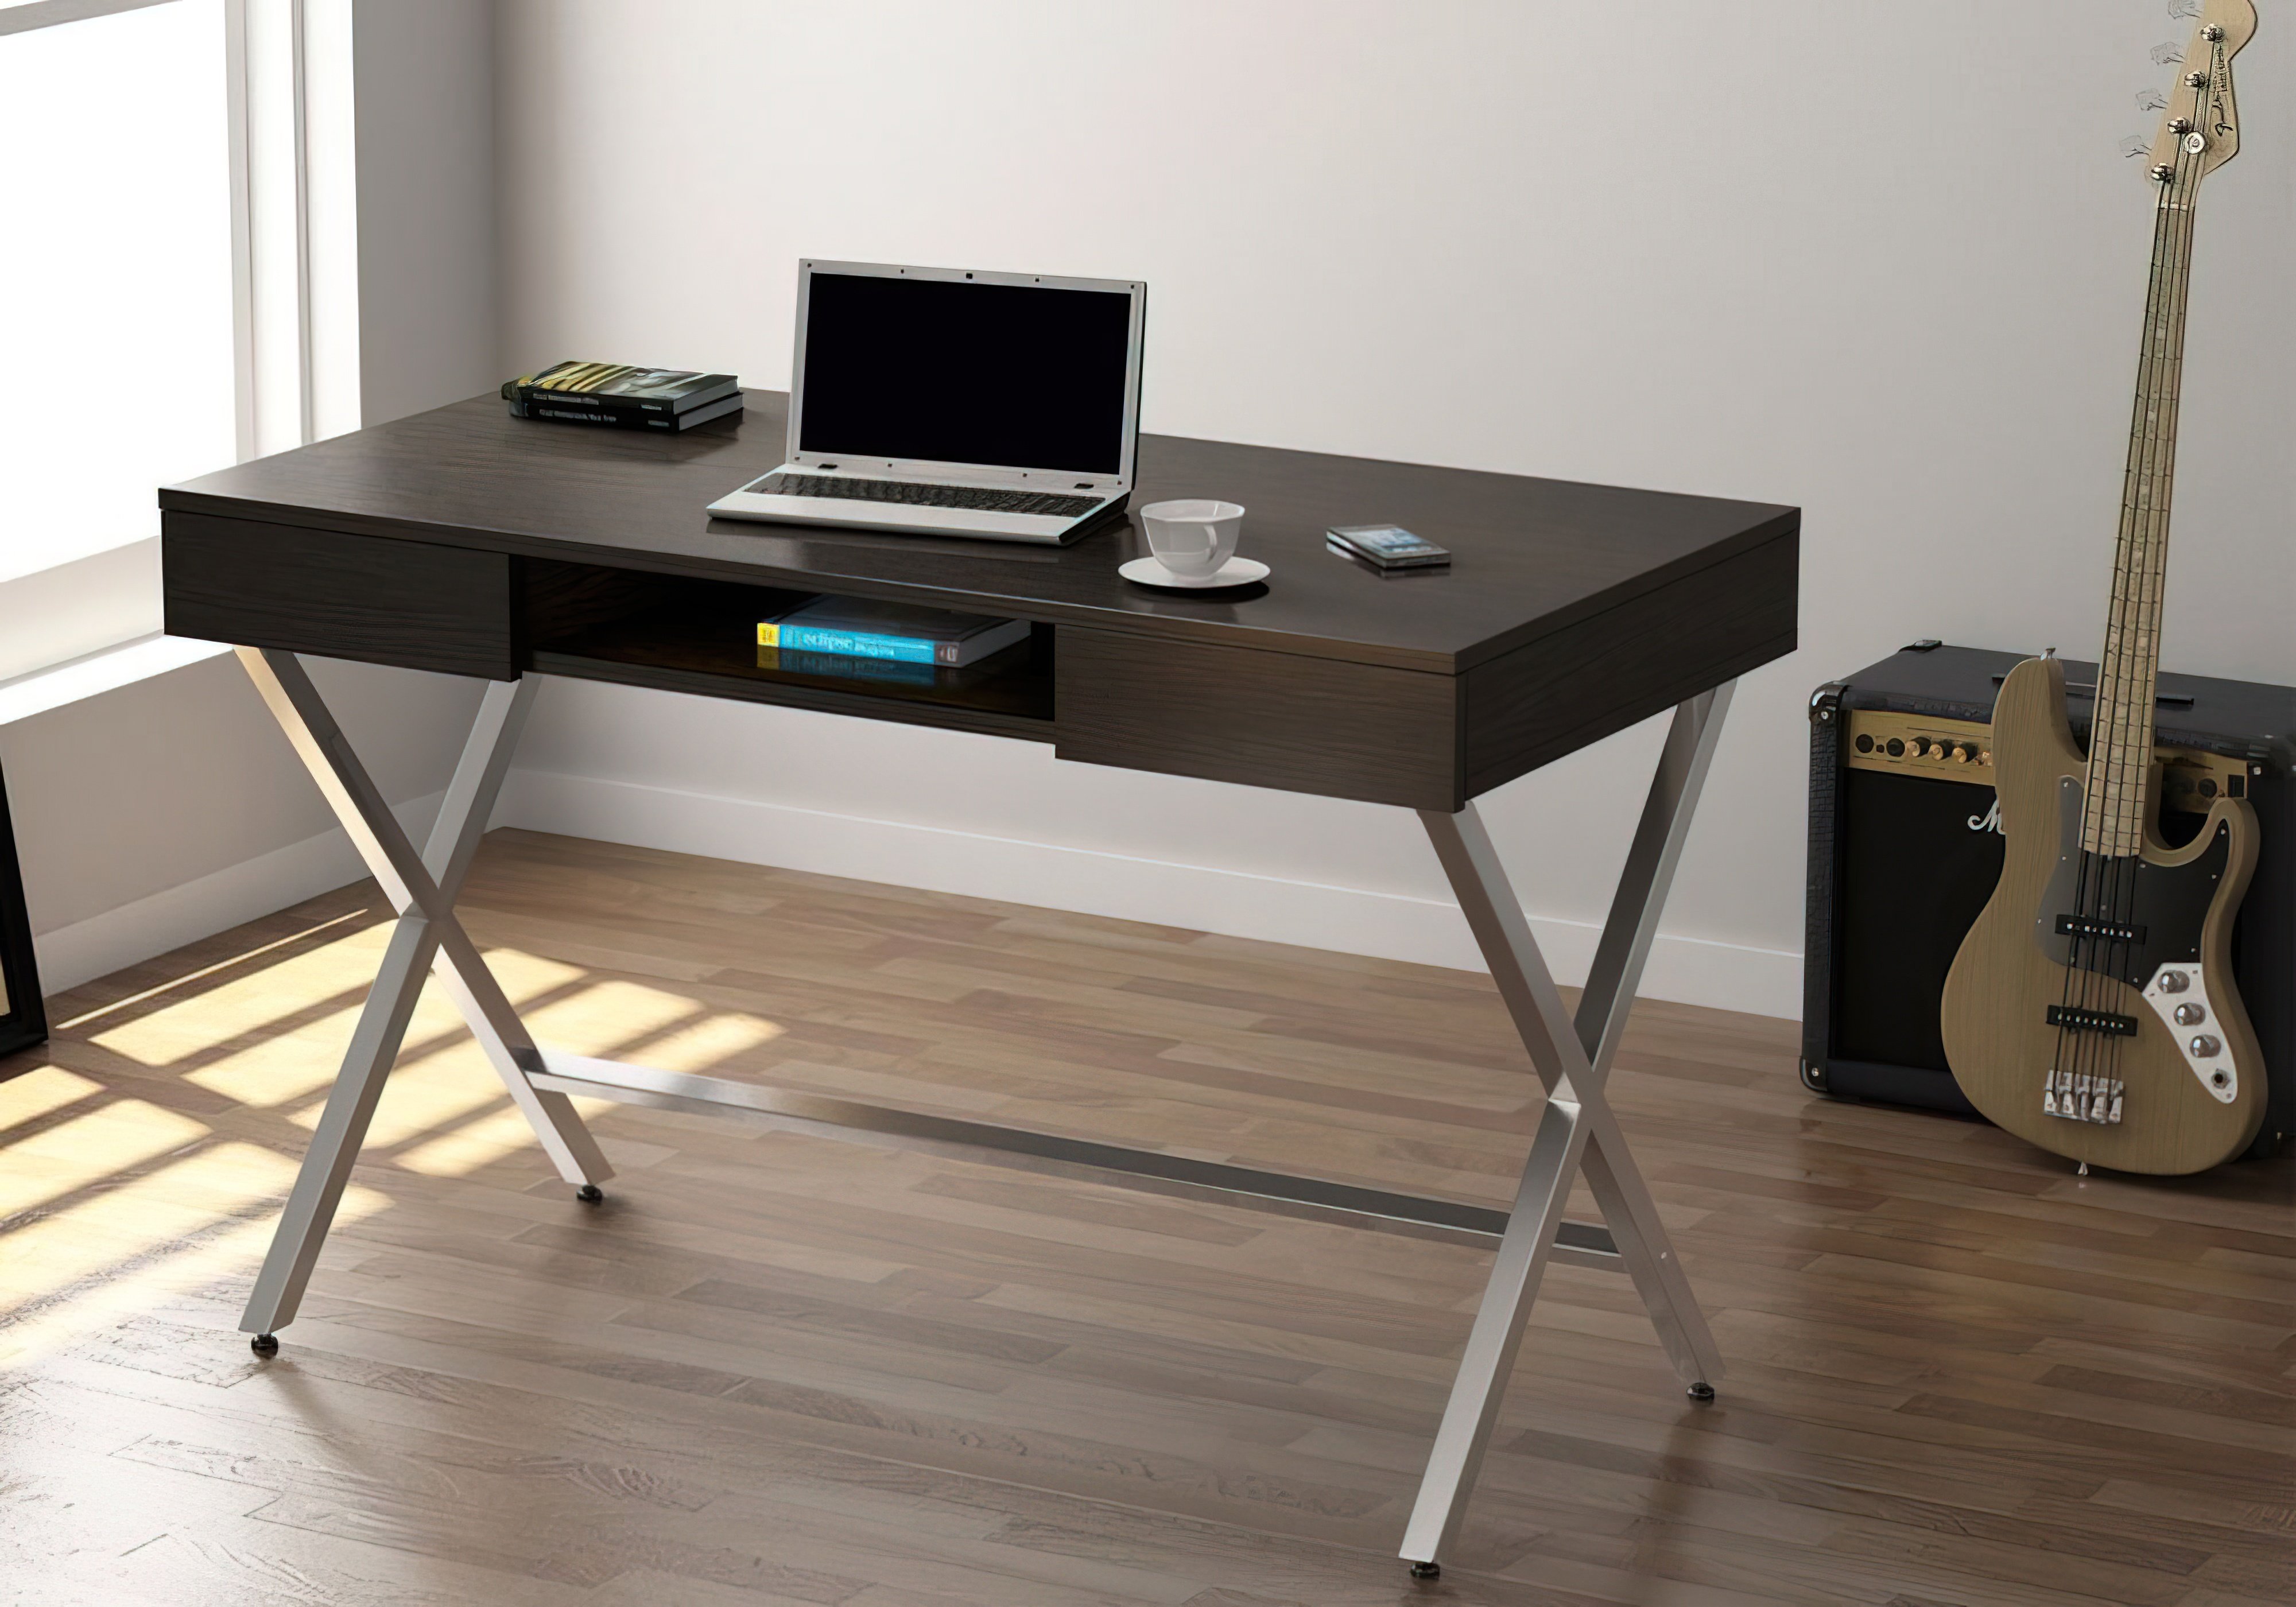  Купить Офисные столы Стол офисный "L-15" Loft Design